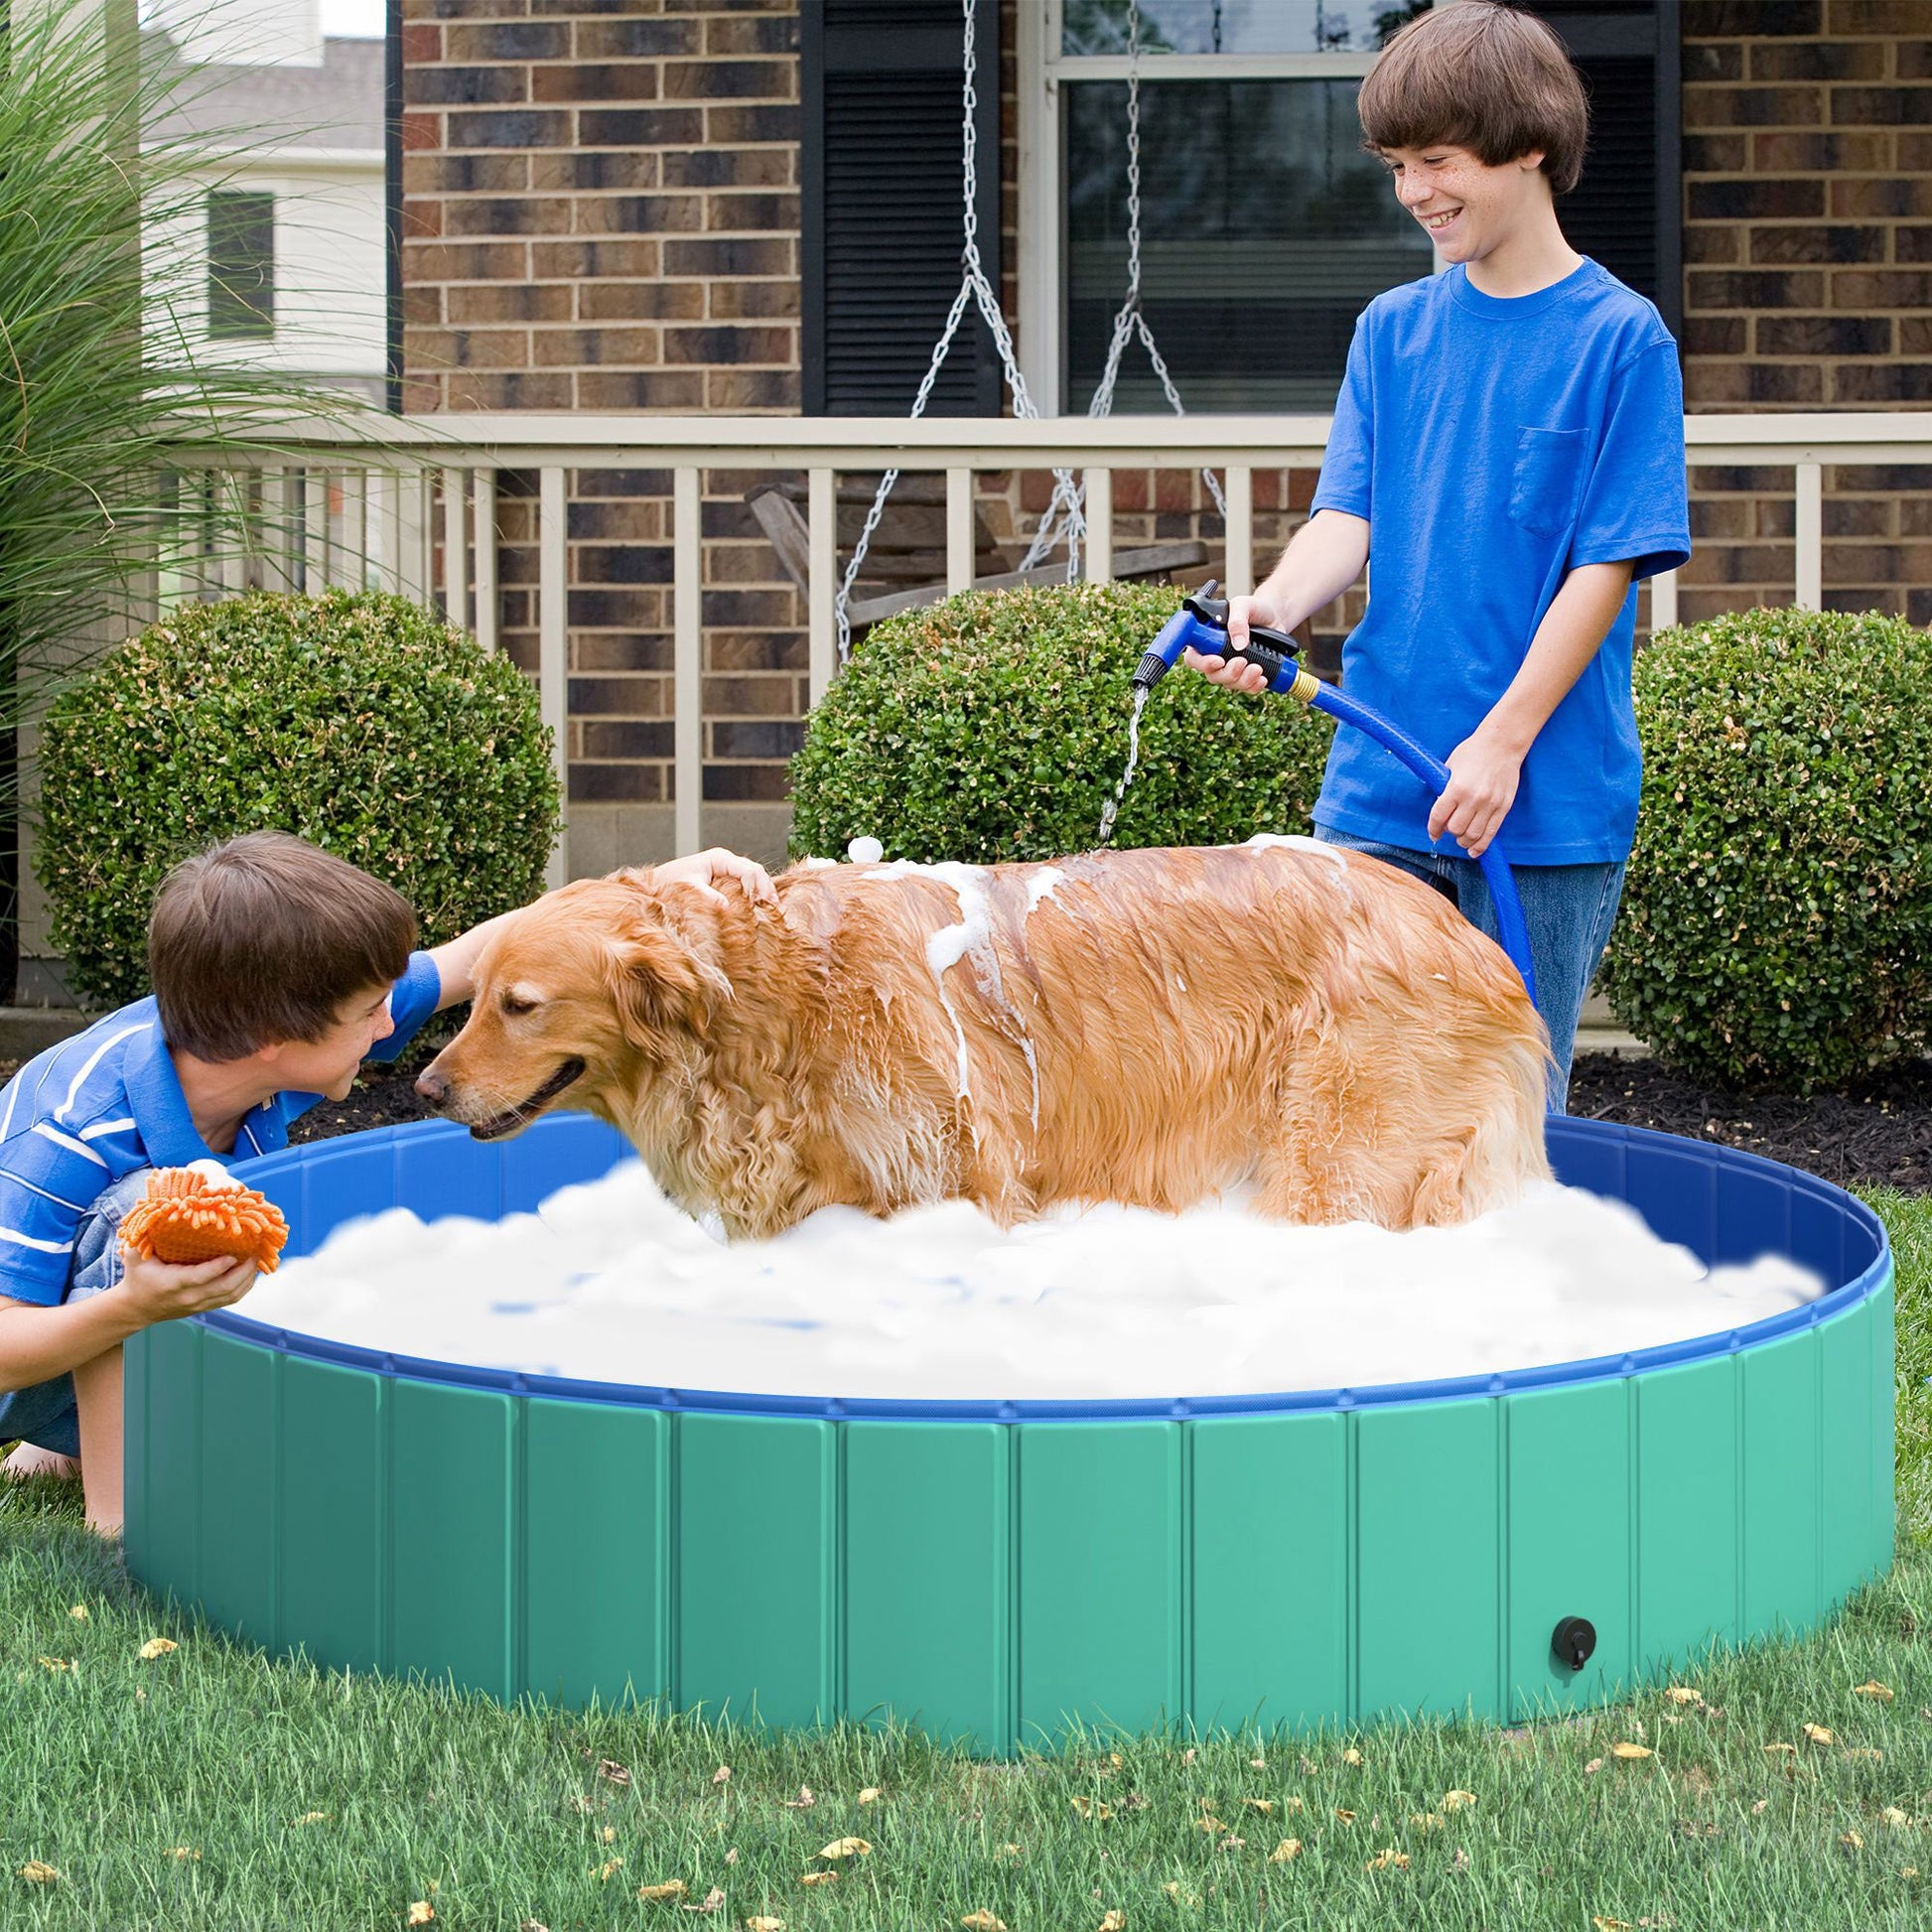 Φ63" Folding Dog Pool for Large dogs, Portable Pet Kiddie Swimming Pool, Outdoor/Indoor Puppy Bath Tub with Nonslip Bottom for Dogs &; Cats, Green at Gallery Canada